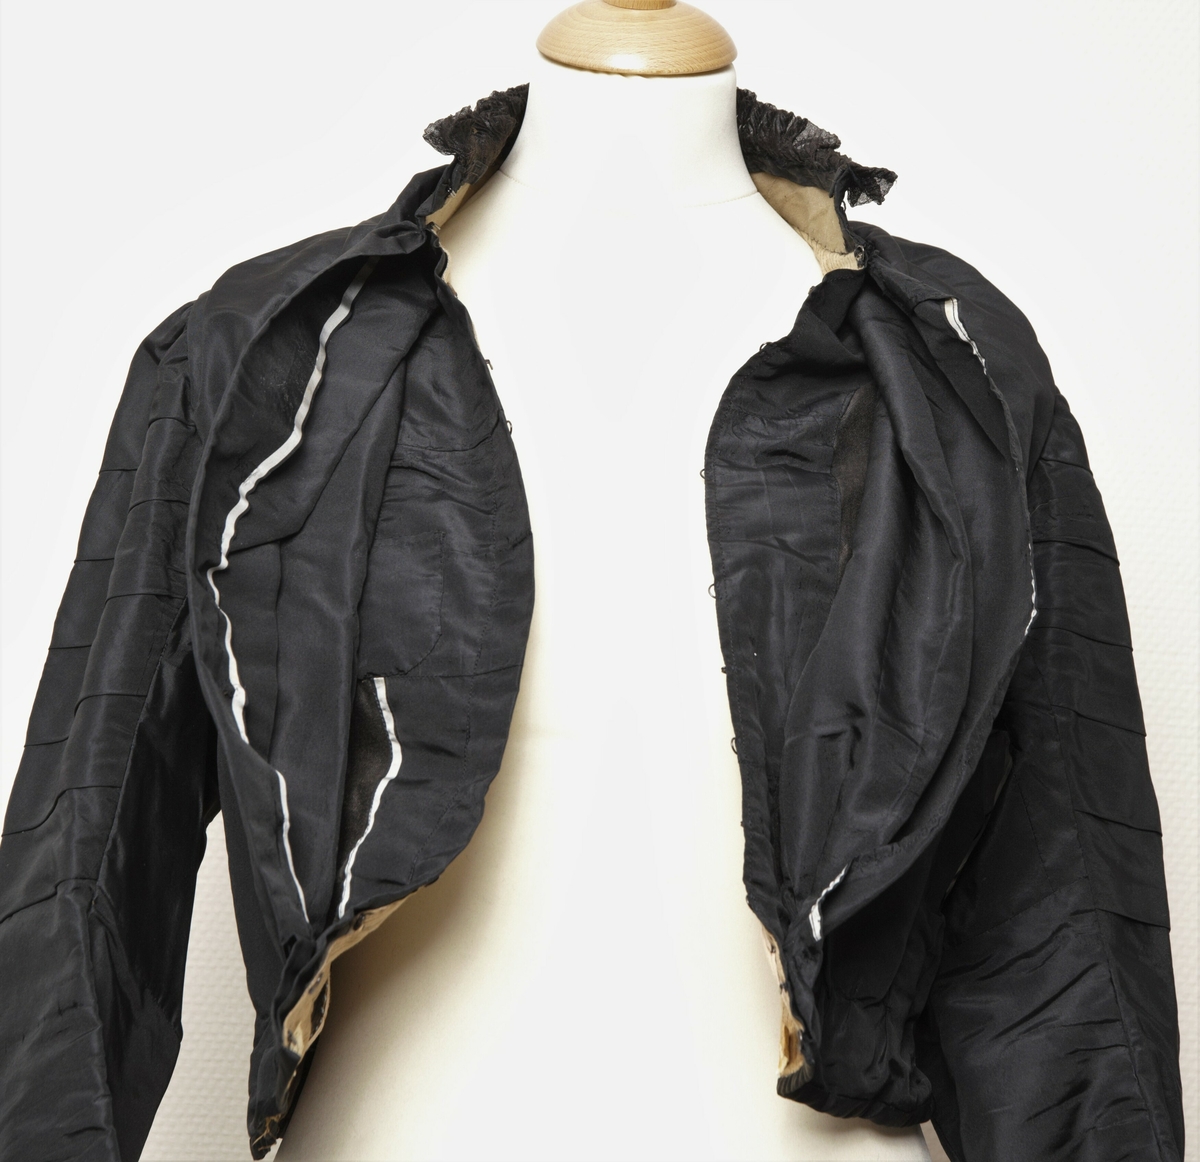 Kvinnetrøye eller kjoleliv sydd i svart silketaft. Med isydde spiler. Dobbel lukking foran. 